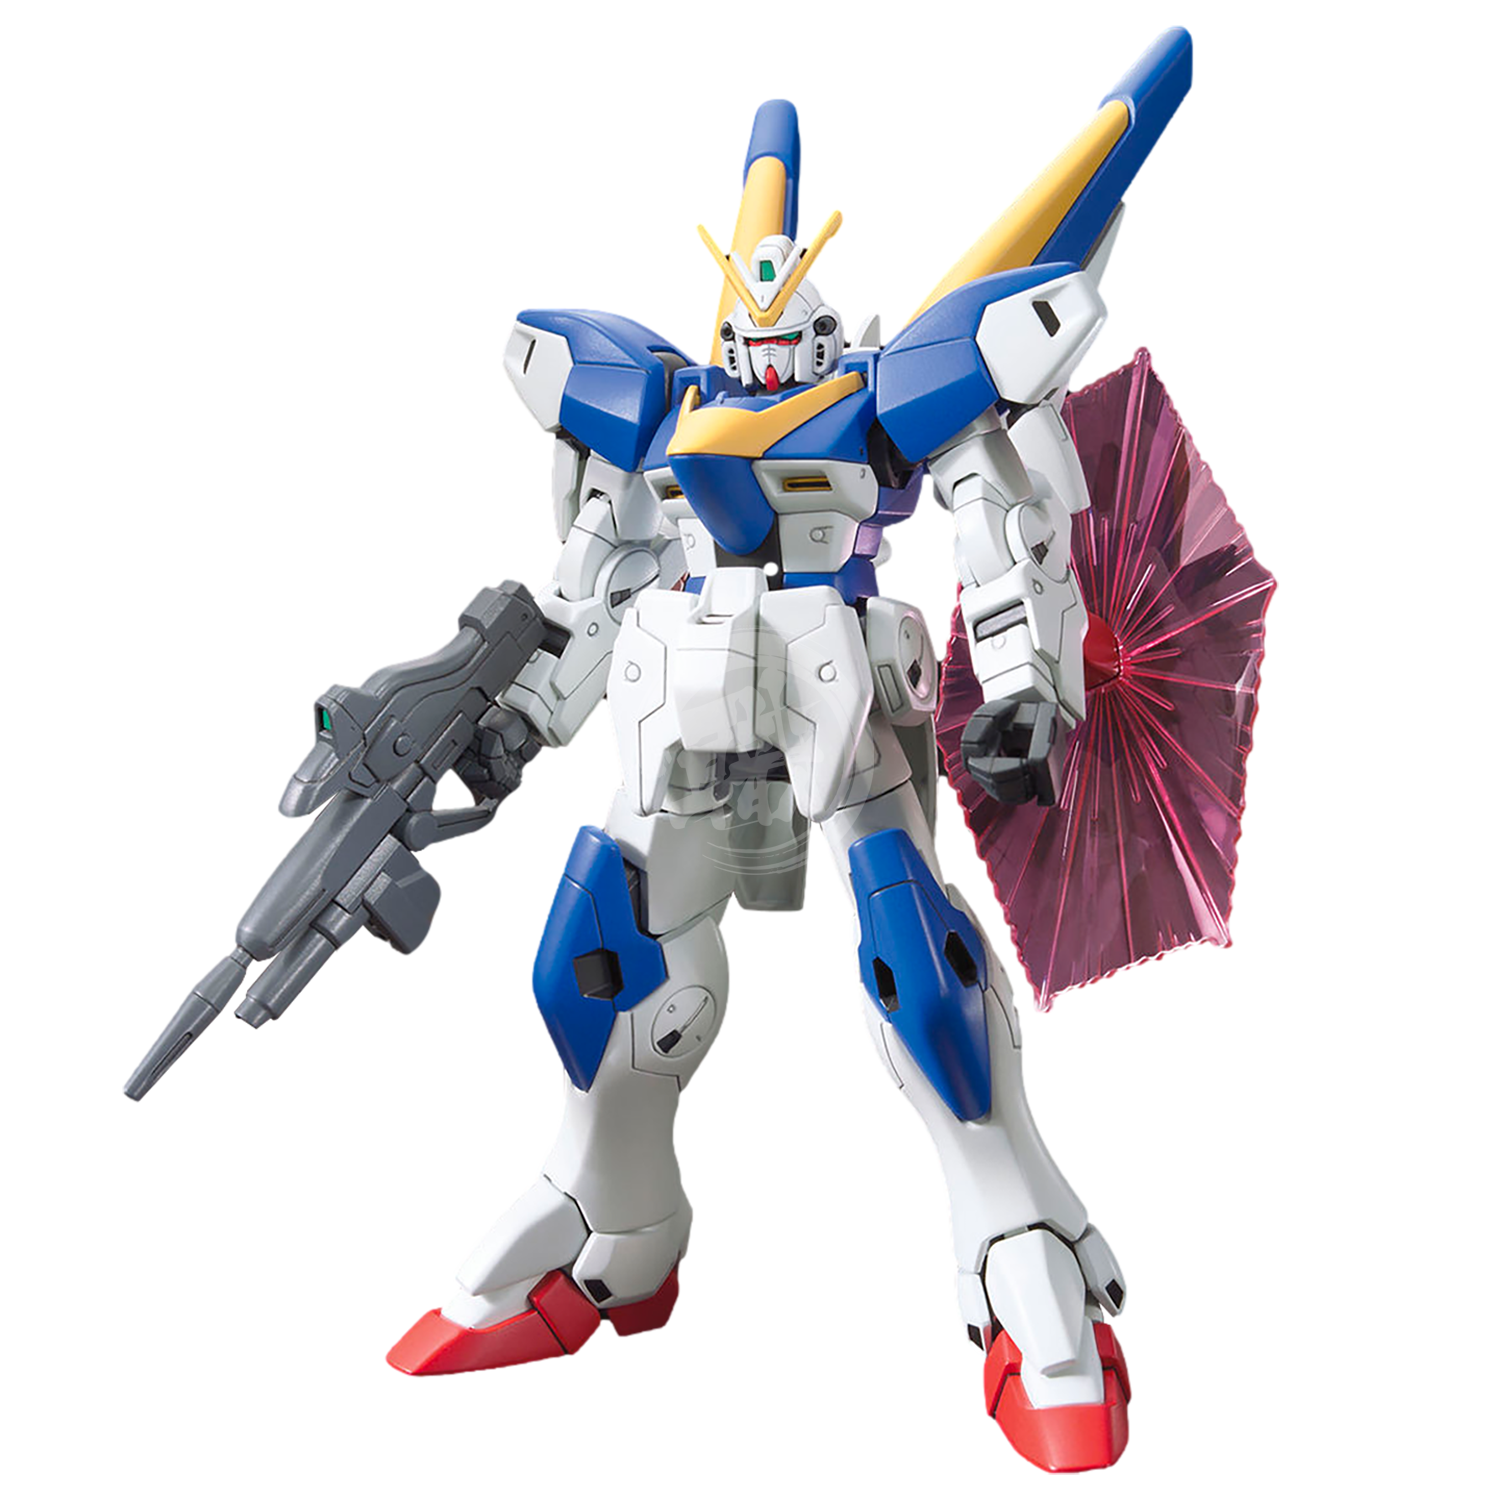 HG Victory Two Gundam - ShokuninGunpla